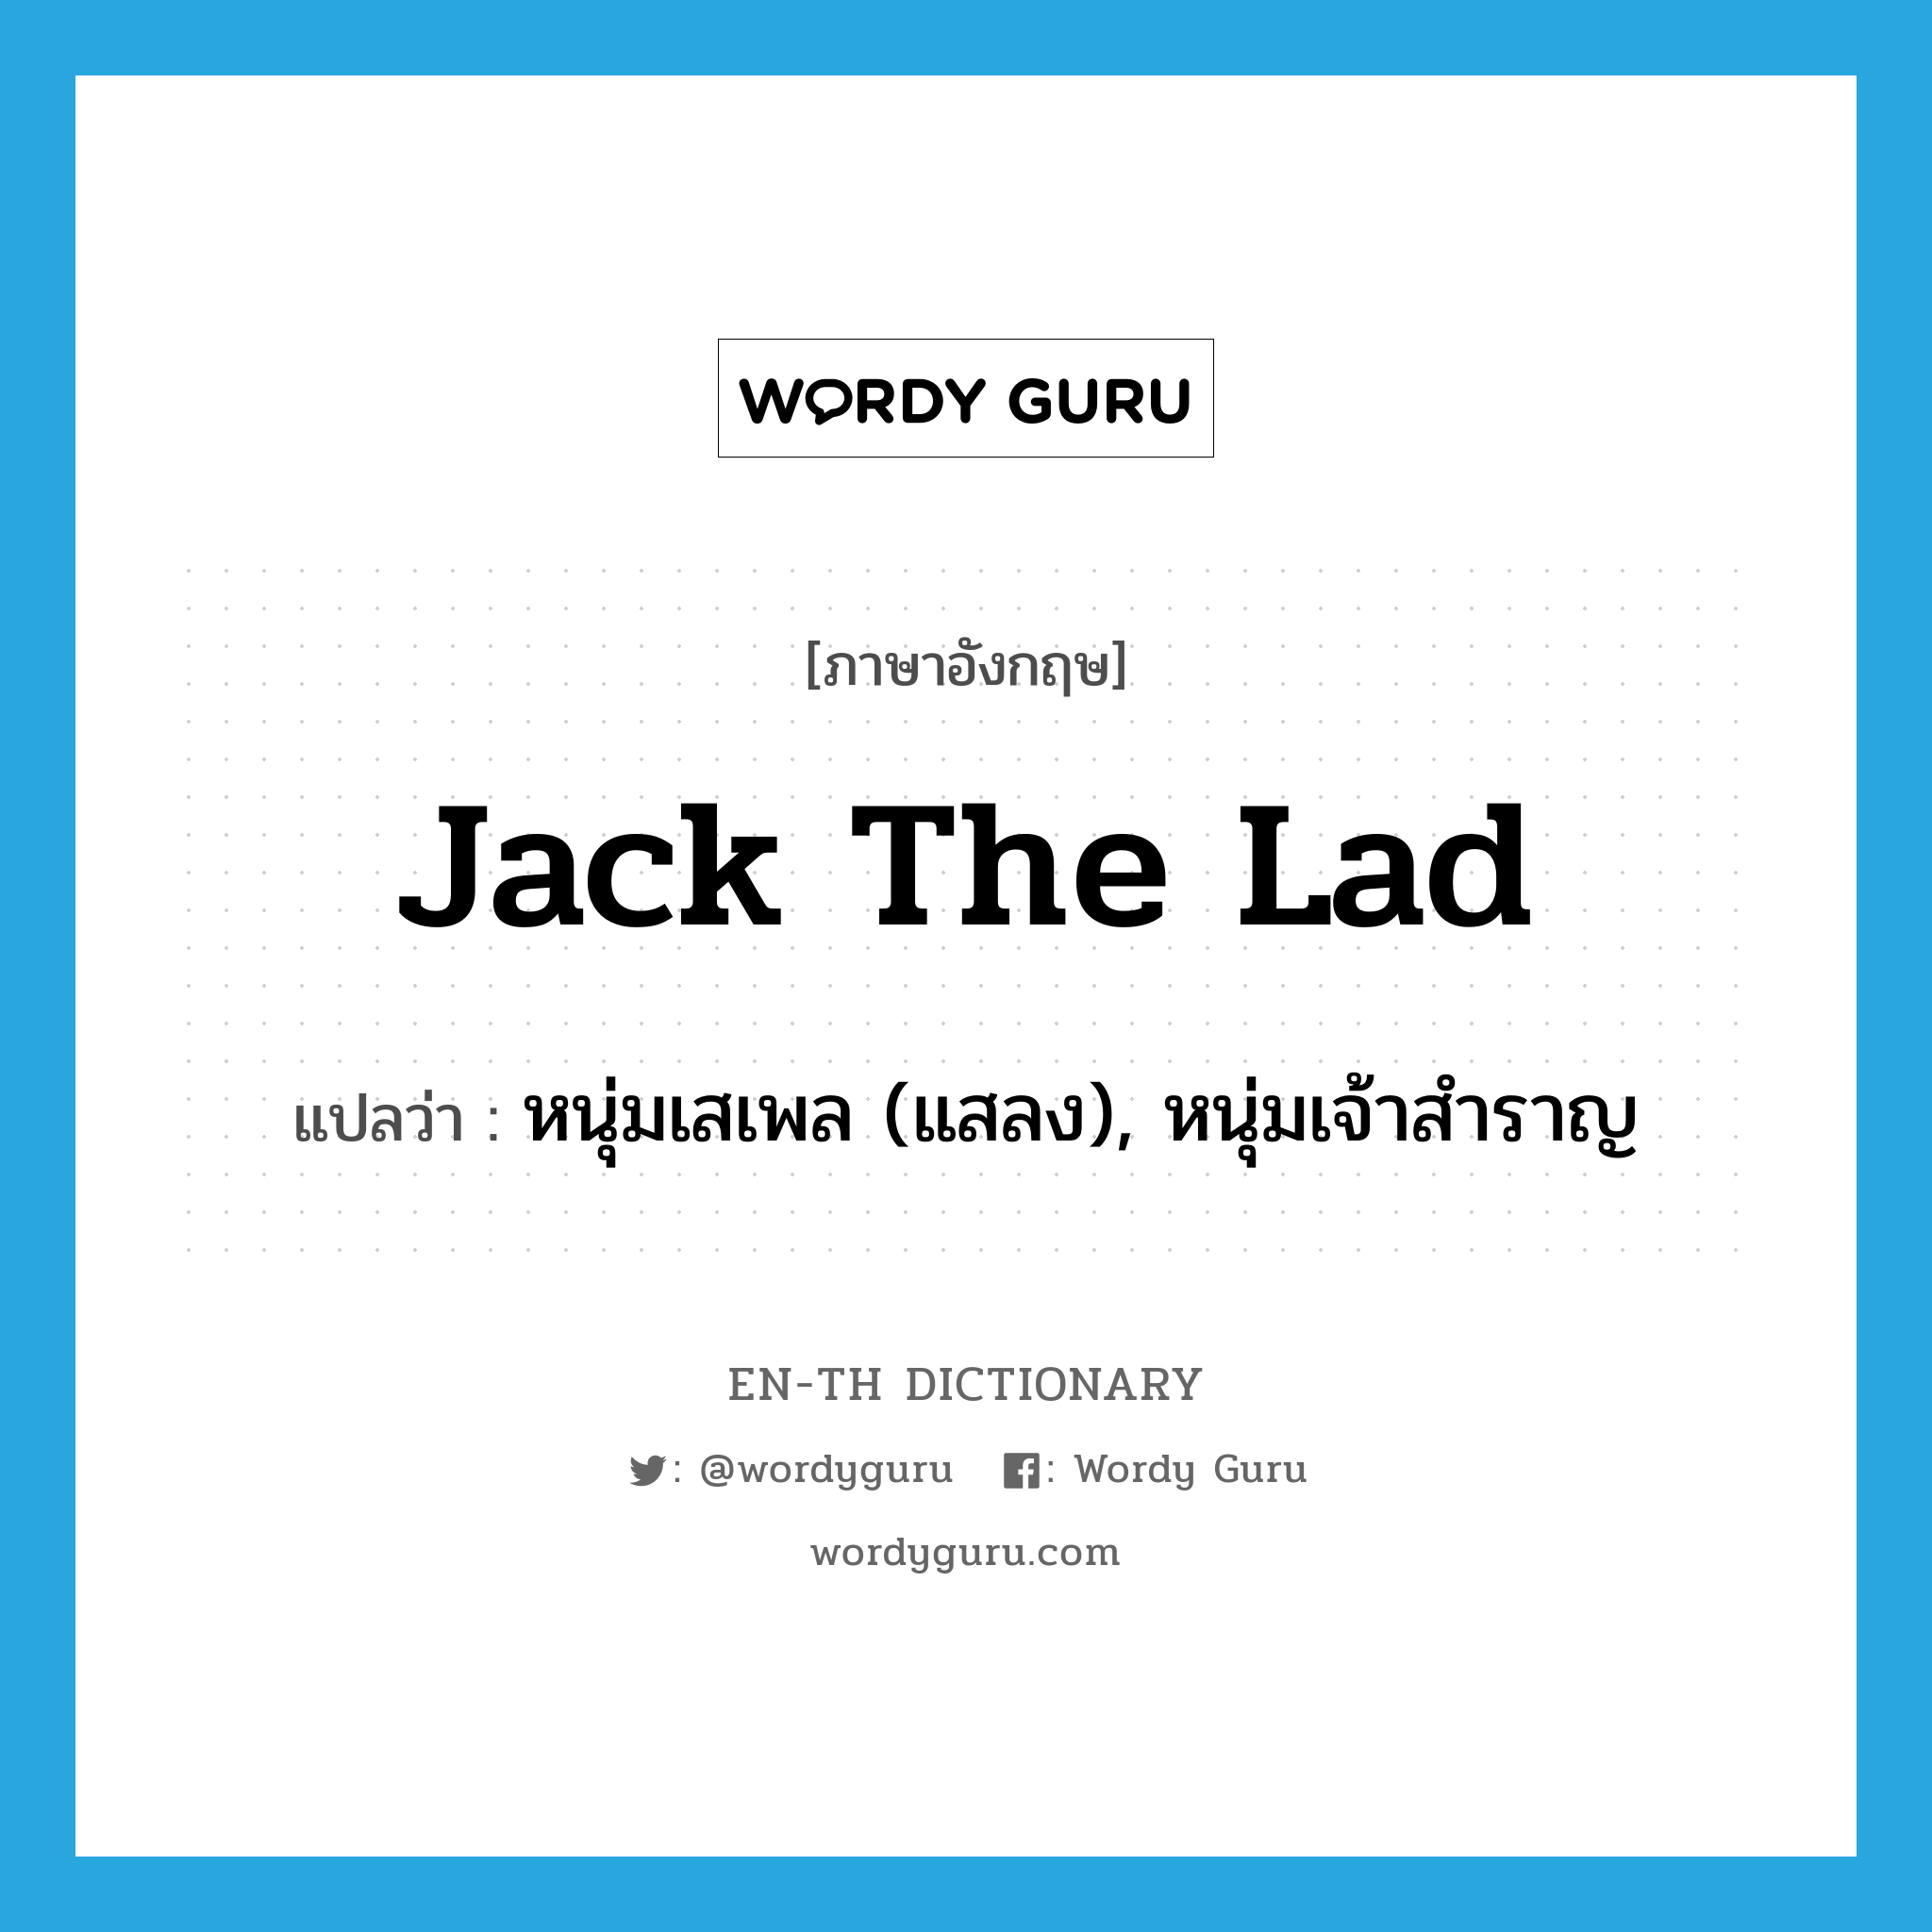 Jack the Lad แปลว่า?, คำศัพท์ภาษาอังกฤษ Jack the Lad แปลว่า หนุ่มเสเพล (แสลง), หนุ่มเจ้าสำราญ ประเภท N หมวด N